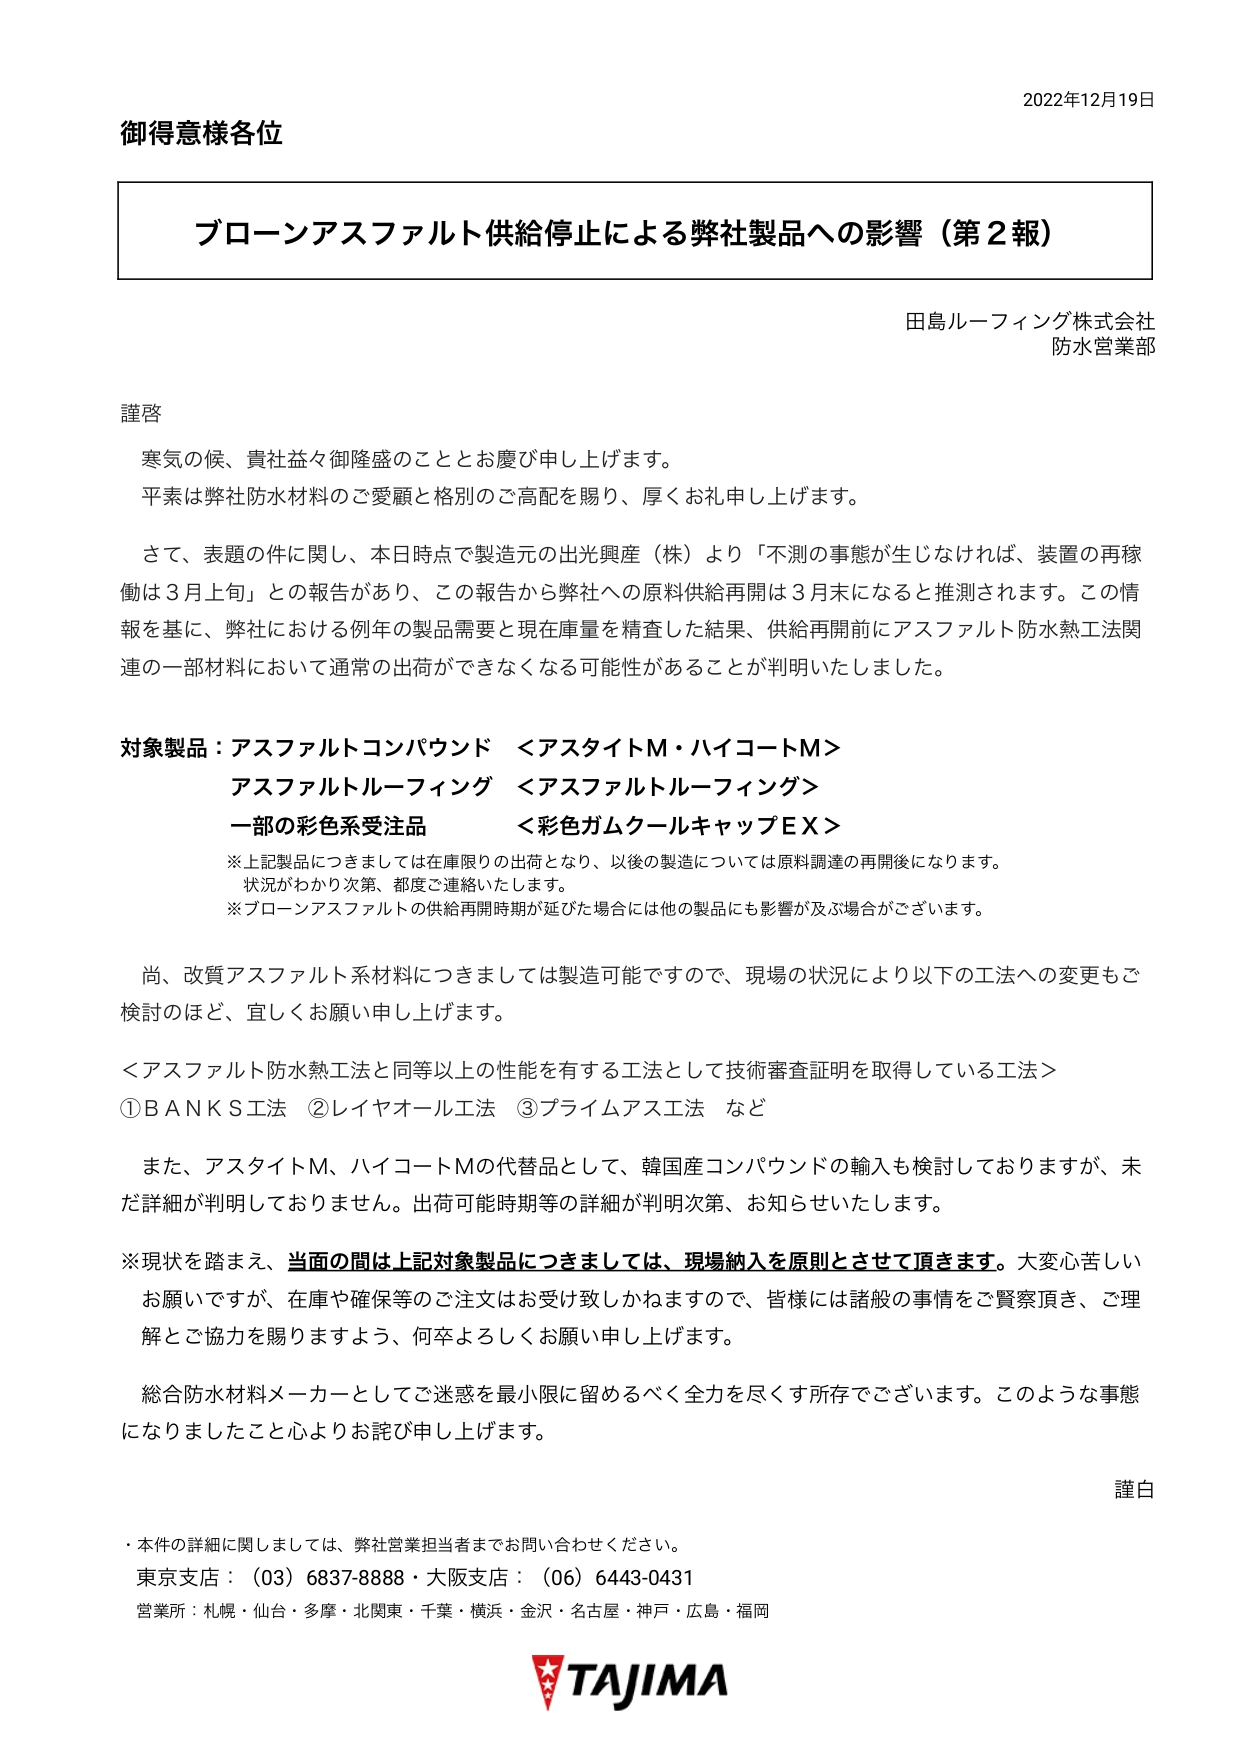 田島ルーフィング「アスファルト製品について」